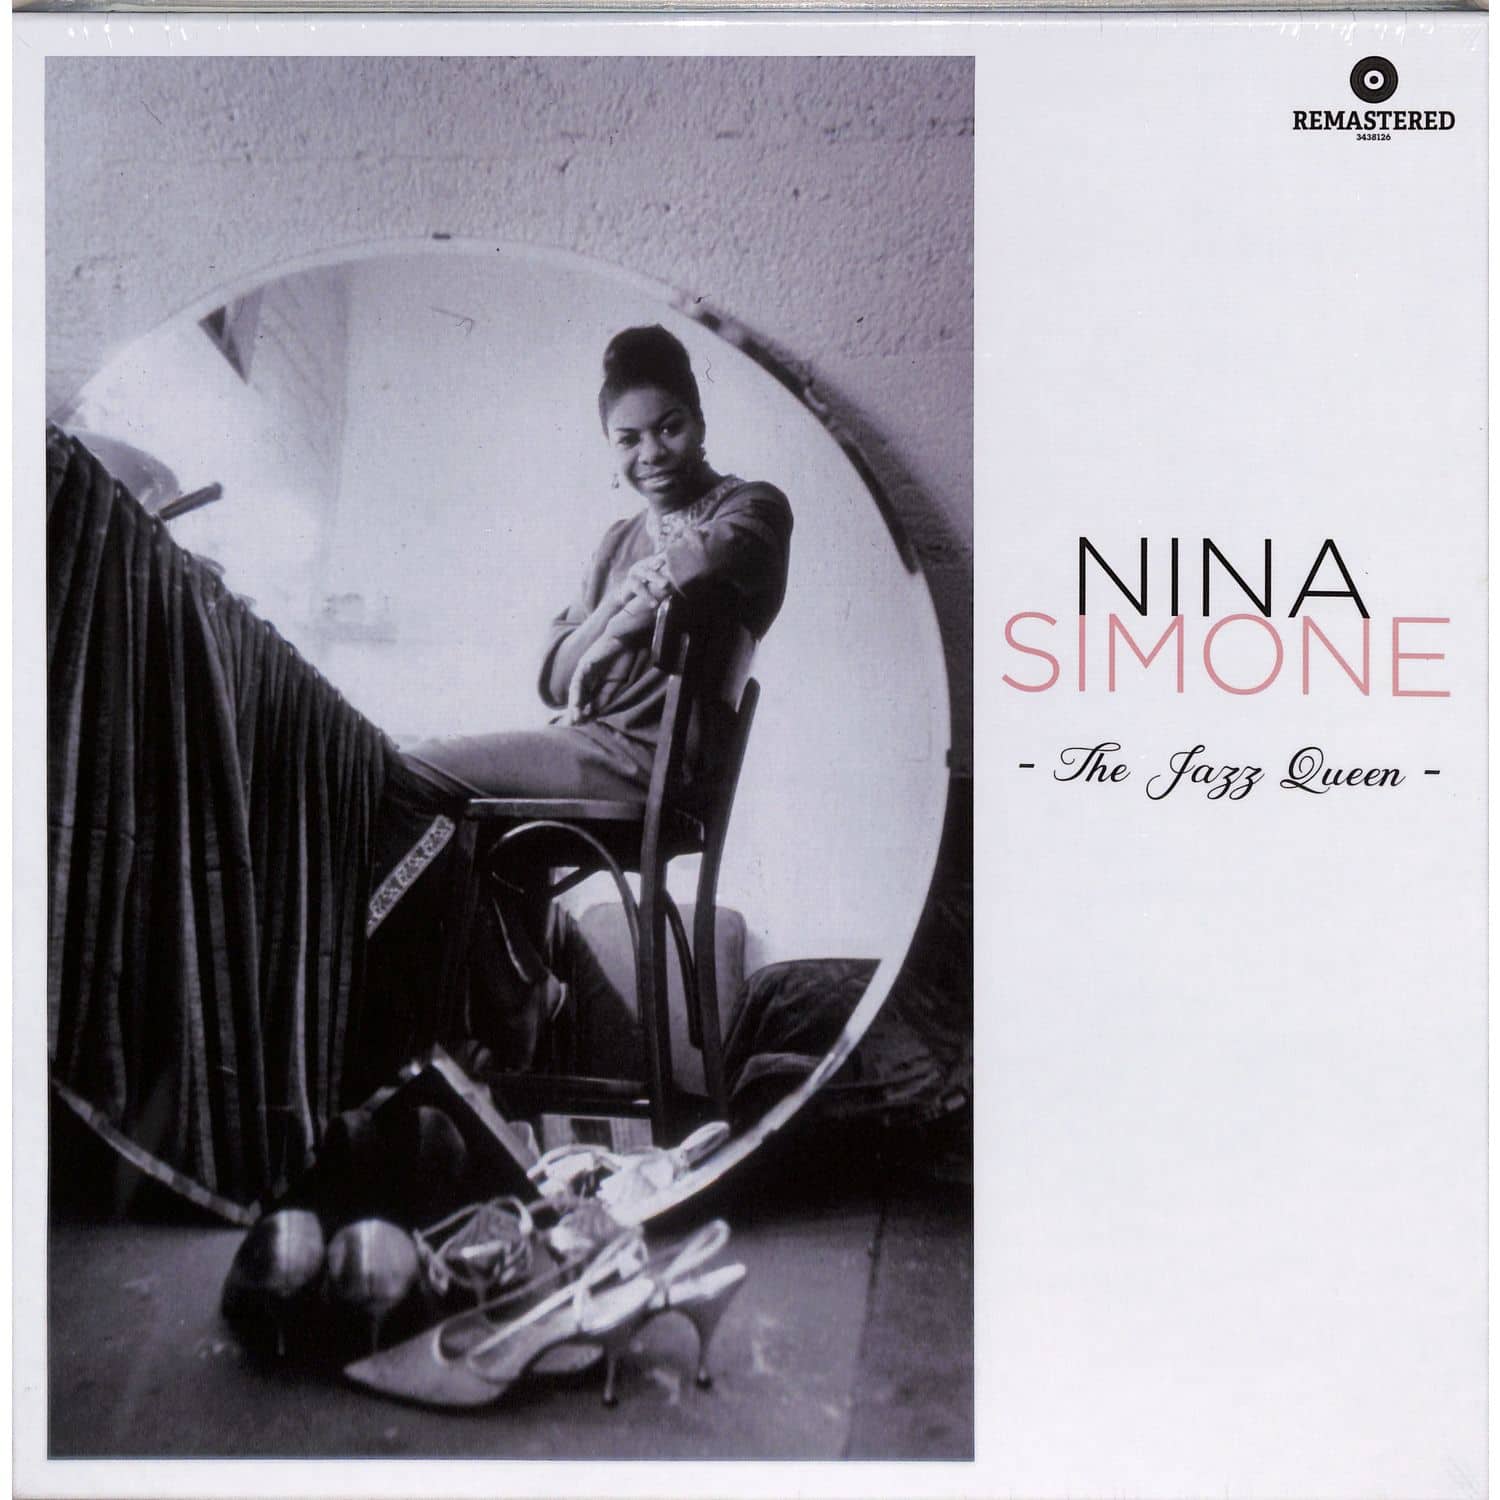 Nina Simone - THE JAZZ QUEEN 